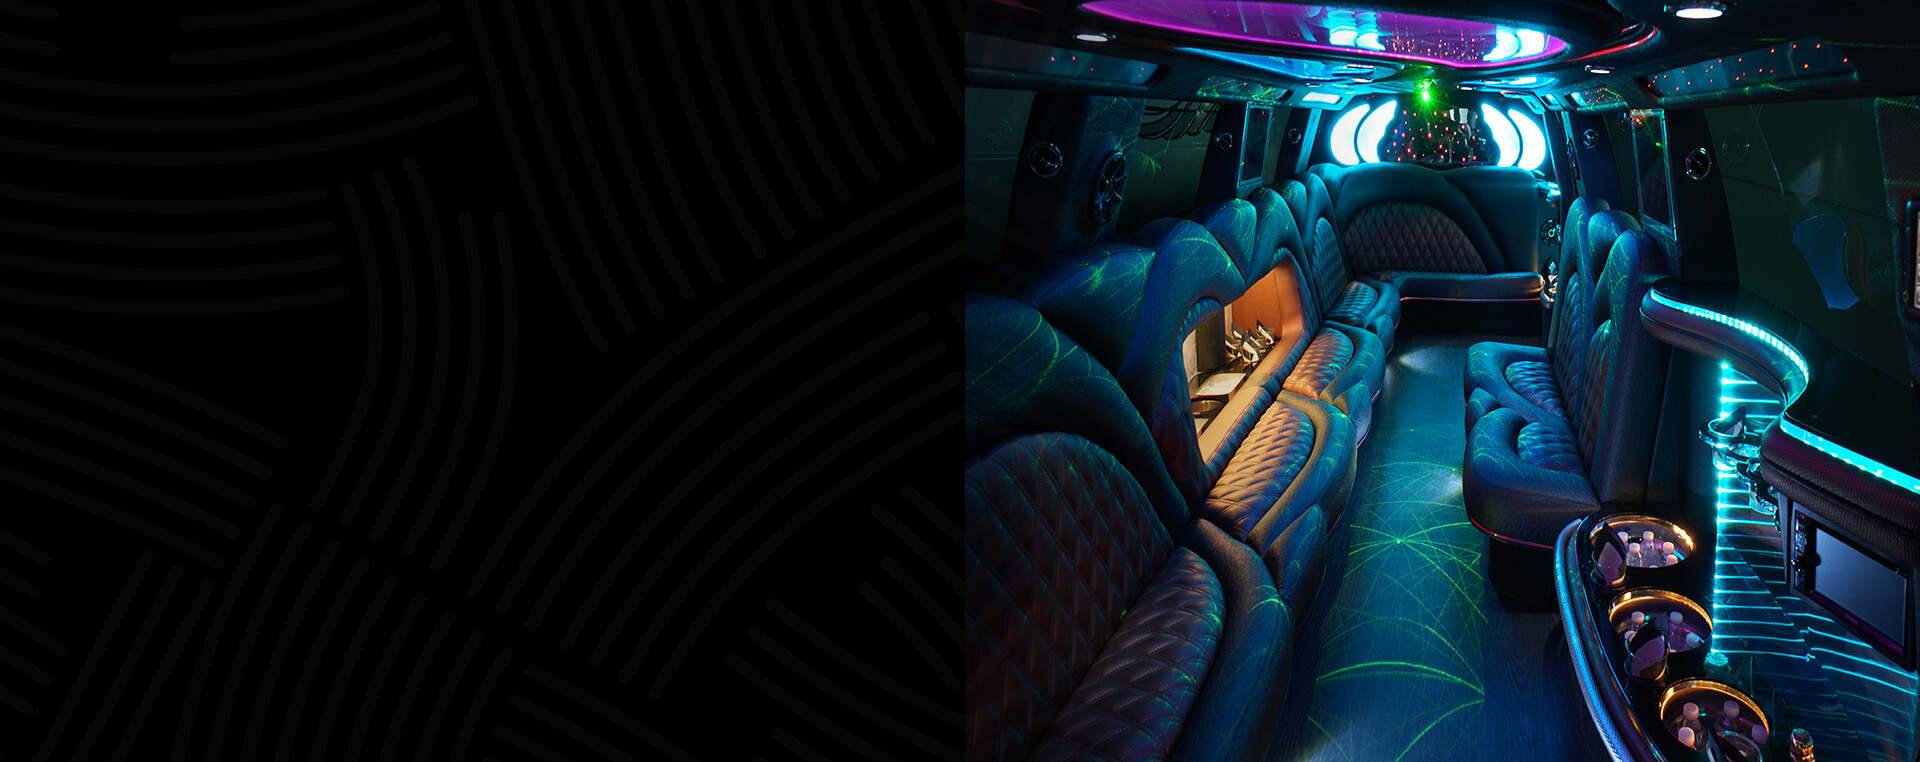 stretch limo interior